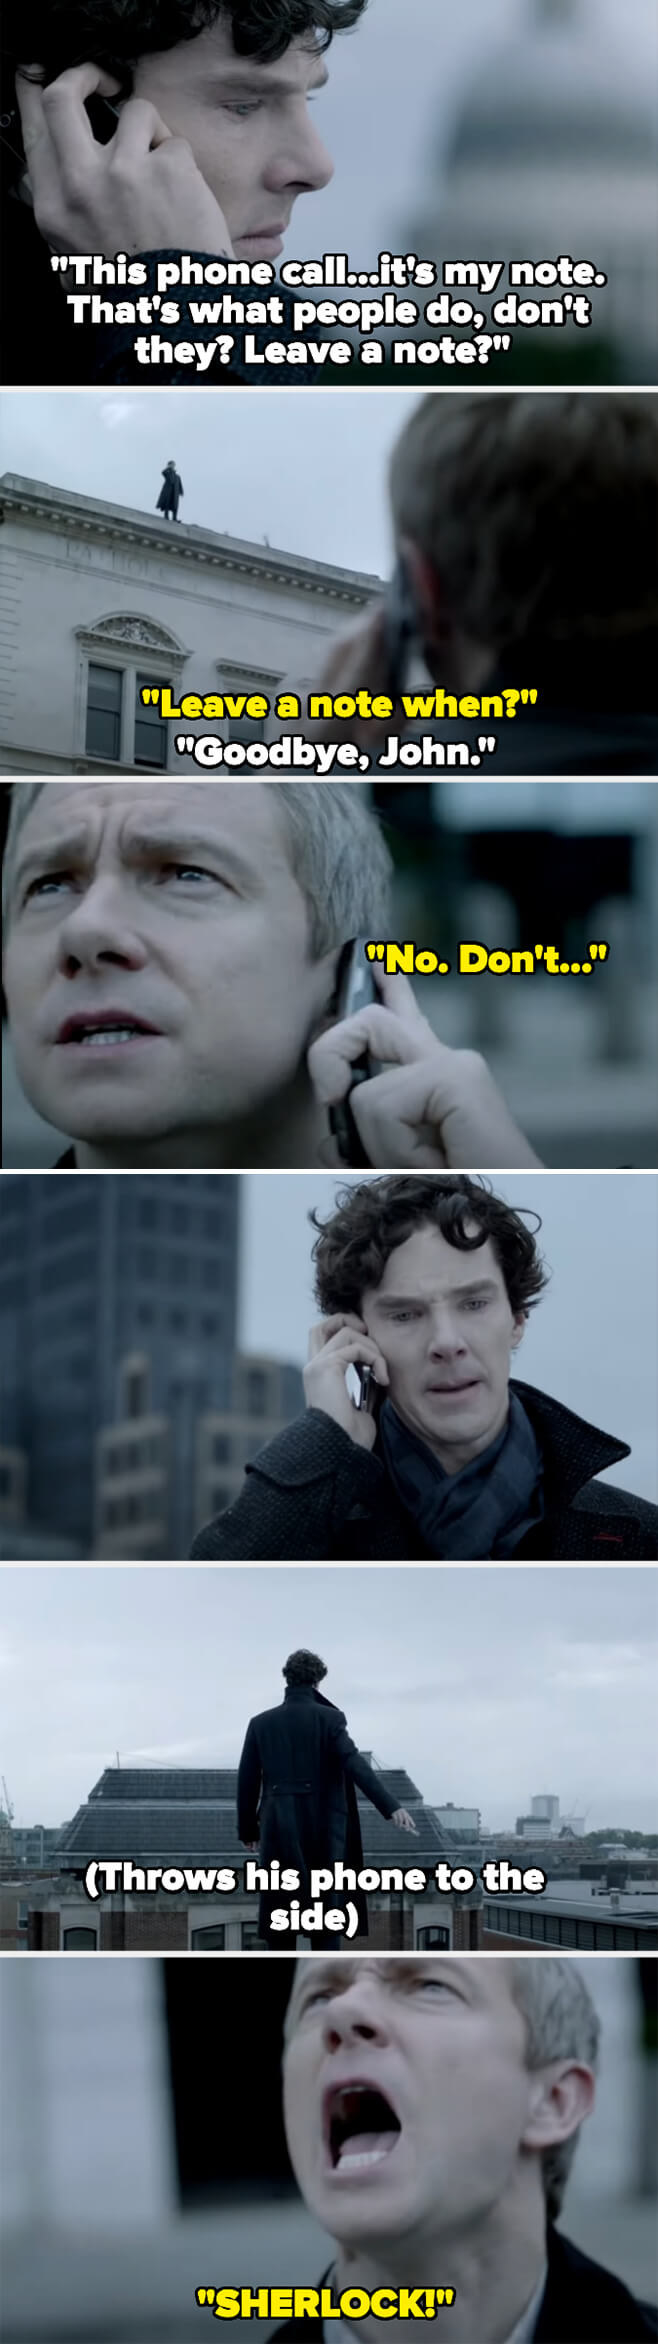 John yelling, &quot;Sherlock!&quot;